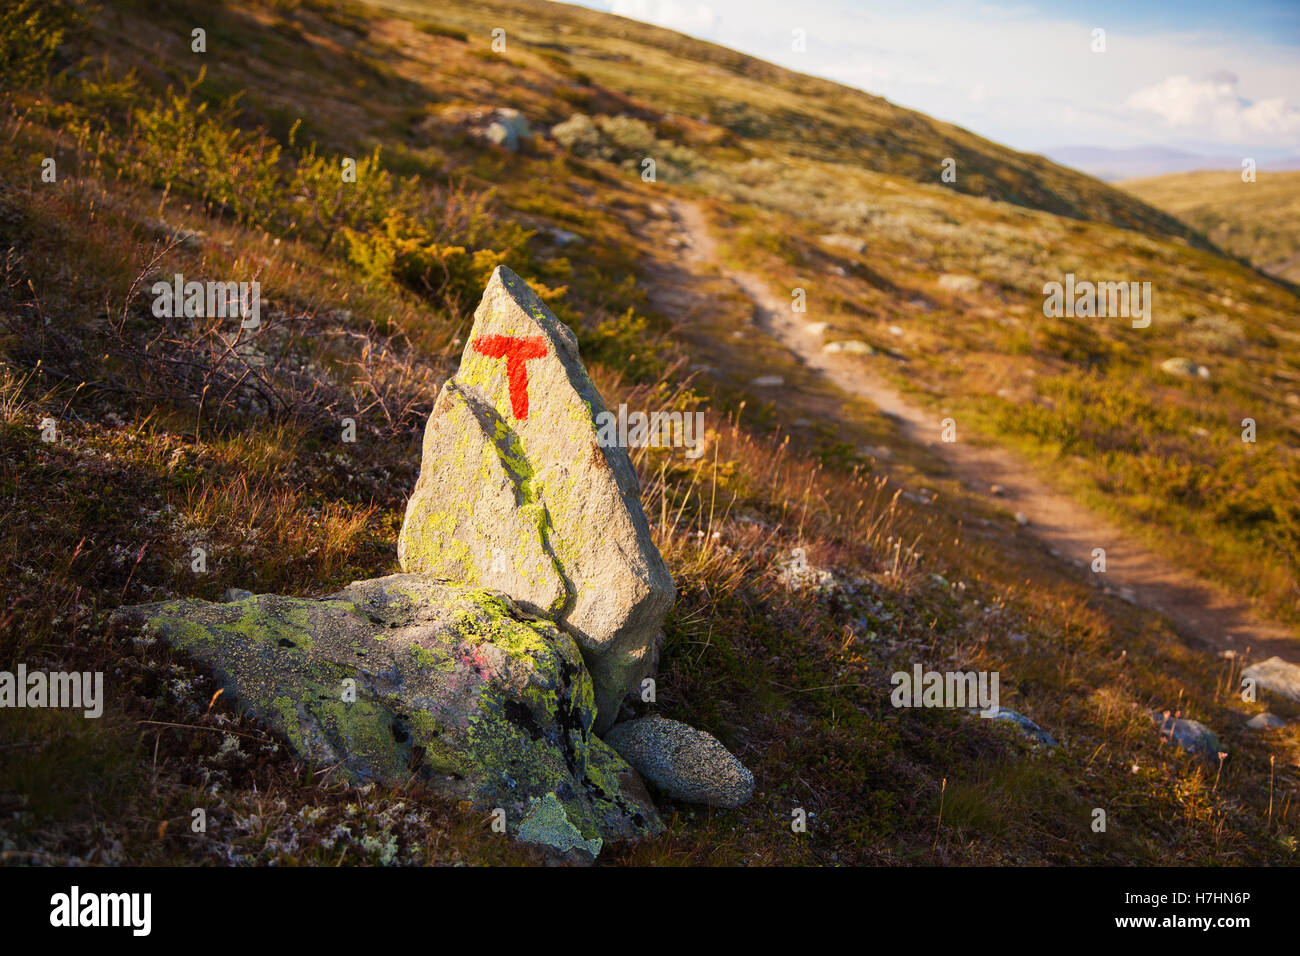 Signe T turistforening paysage de montagnes du parc national de Norvège Dovre Banque D'Images